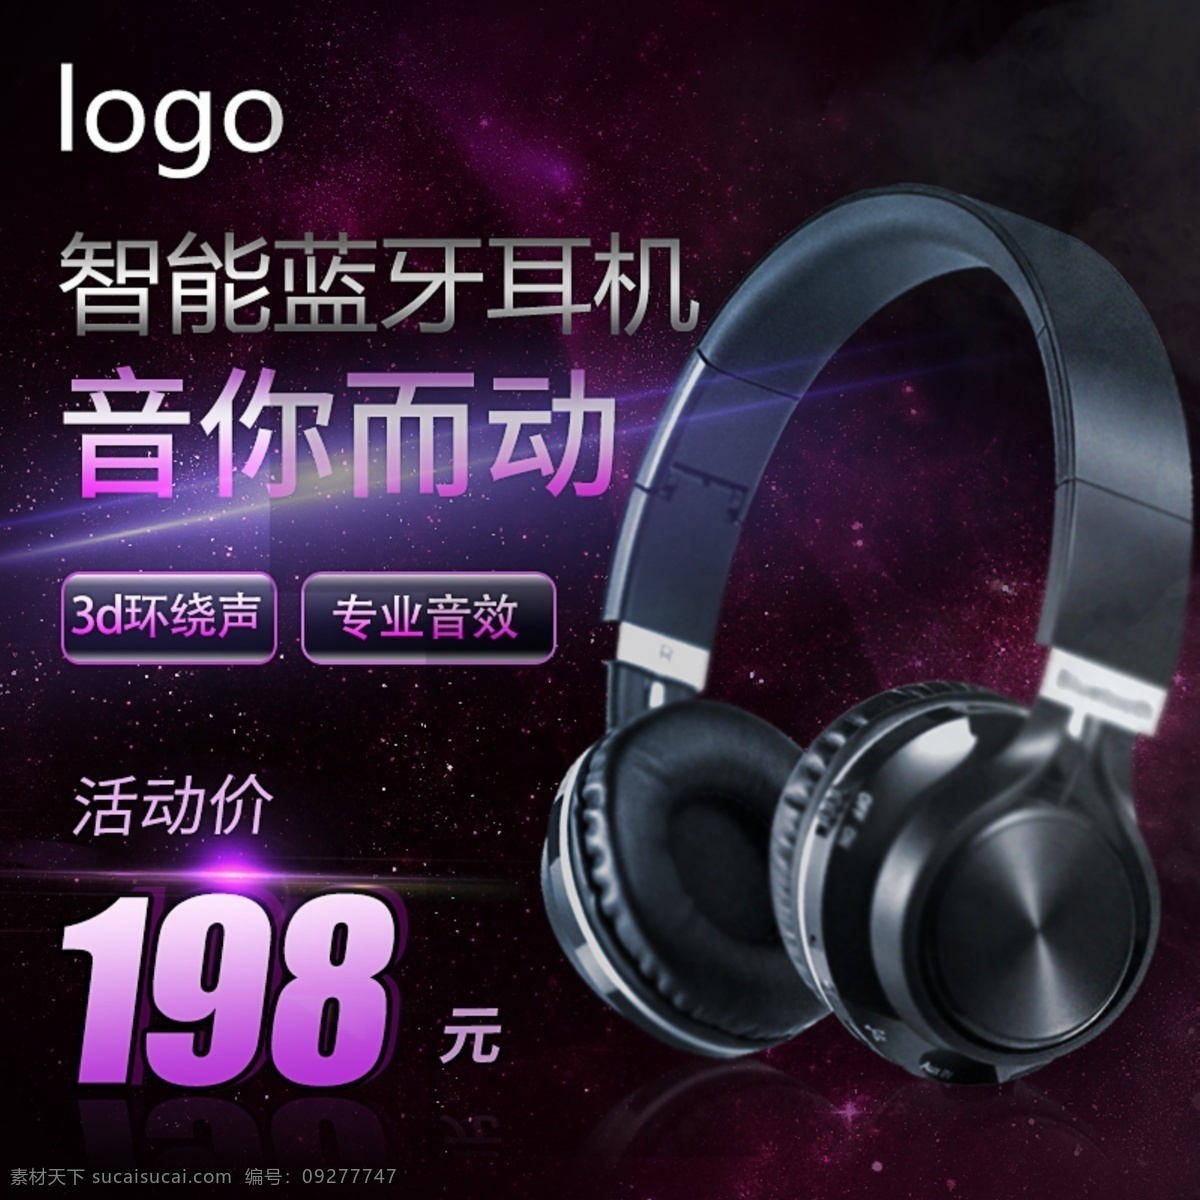 科技 风 数码 电器 头 戴 式 耳机 紫色 系 手机 主 图 智能 高贵 活动促销 蓝牙耳机 头戴式耳机